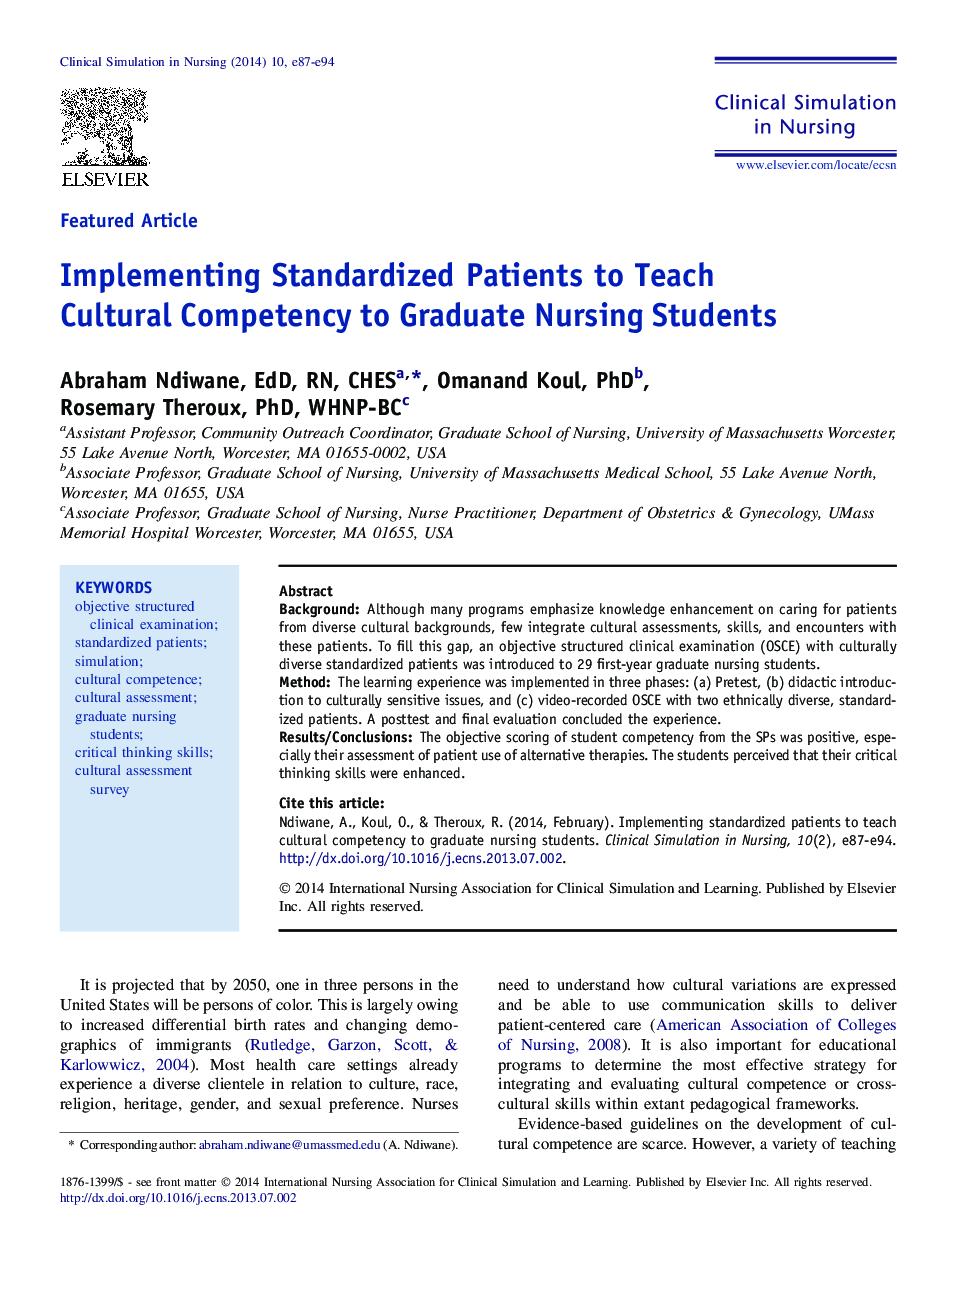 مقالات ویژه ای که بیماران استاندارد را آموزش مهارت های فرهنگی برای دانشجویان پرستاری می دانند 